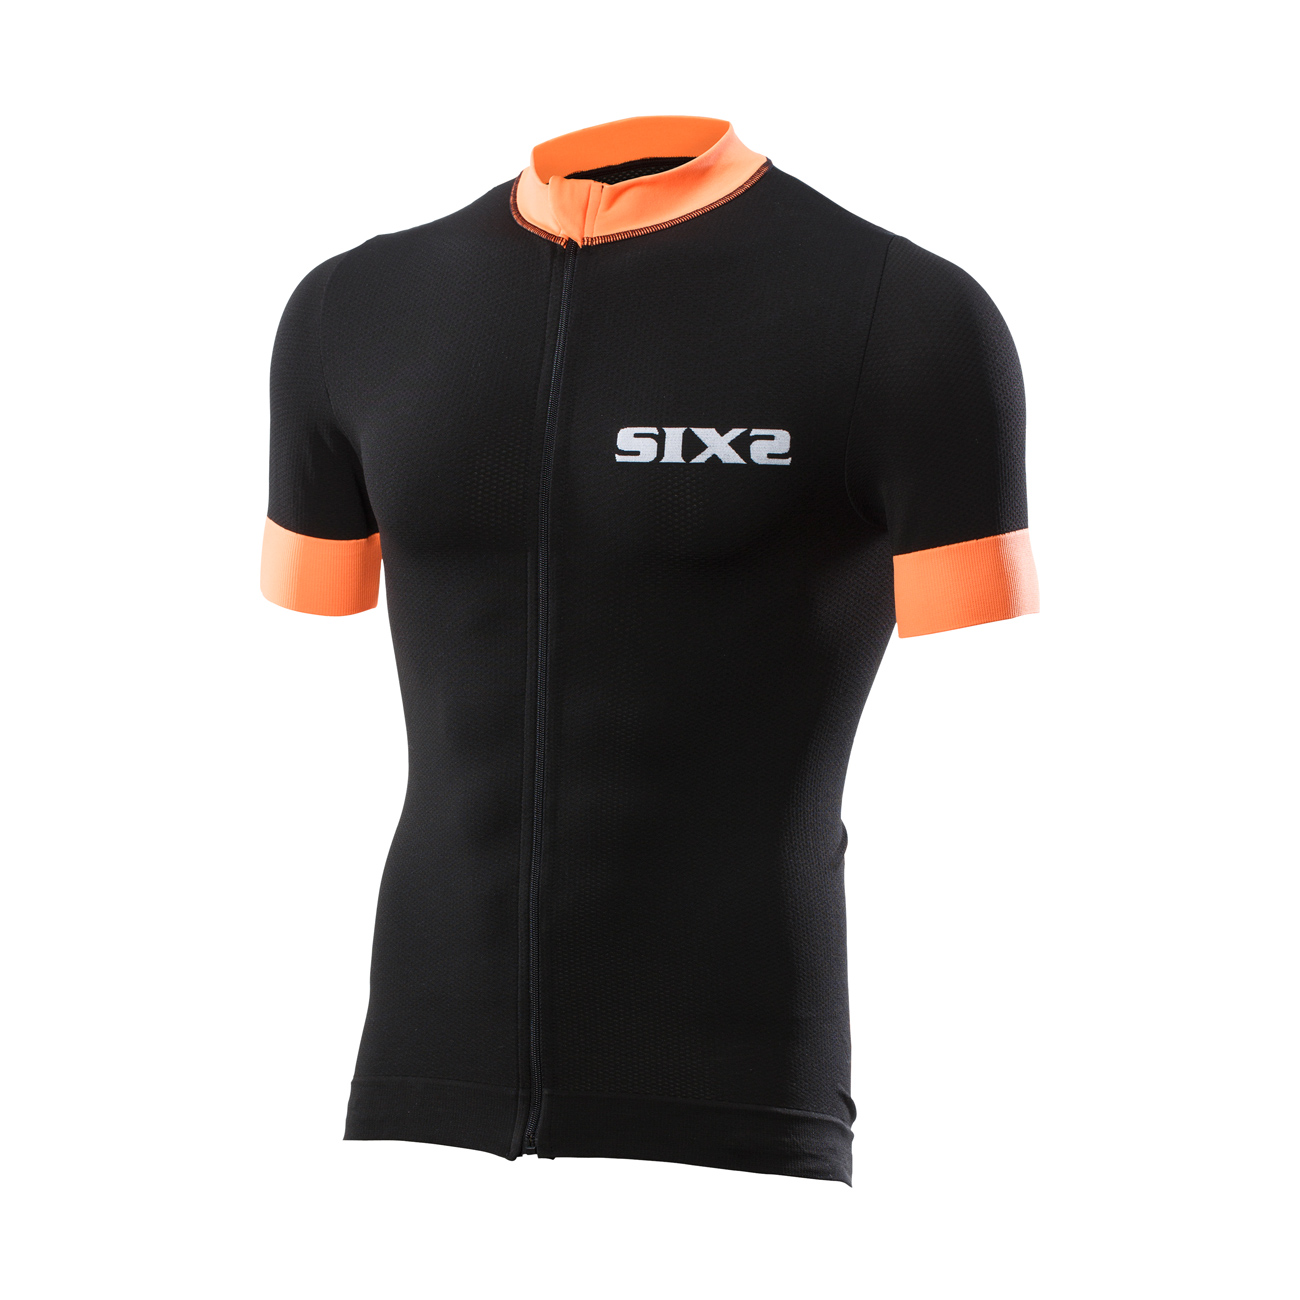 SIX2 Koszulka Kolarska Z Krótkim Rękawem - BIKE3 STRIPES - Pomarańczowy/czarny